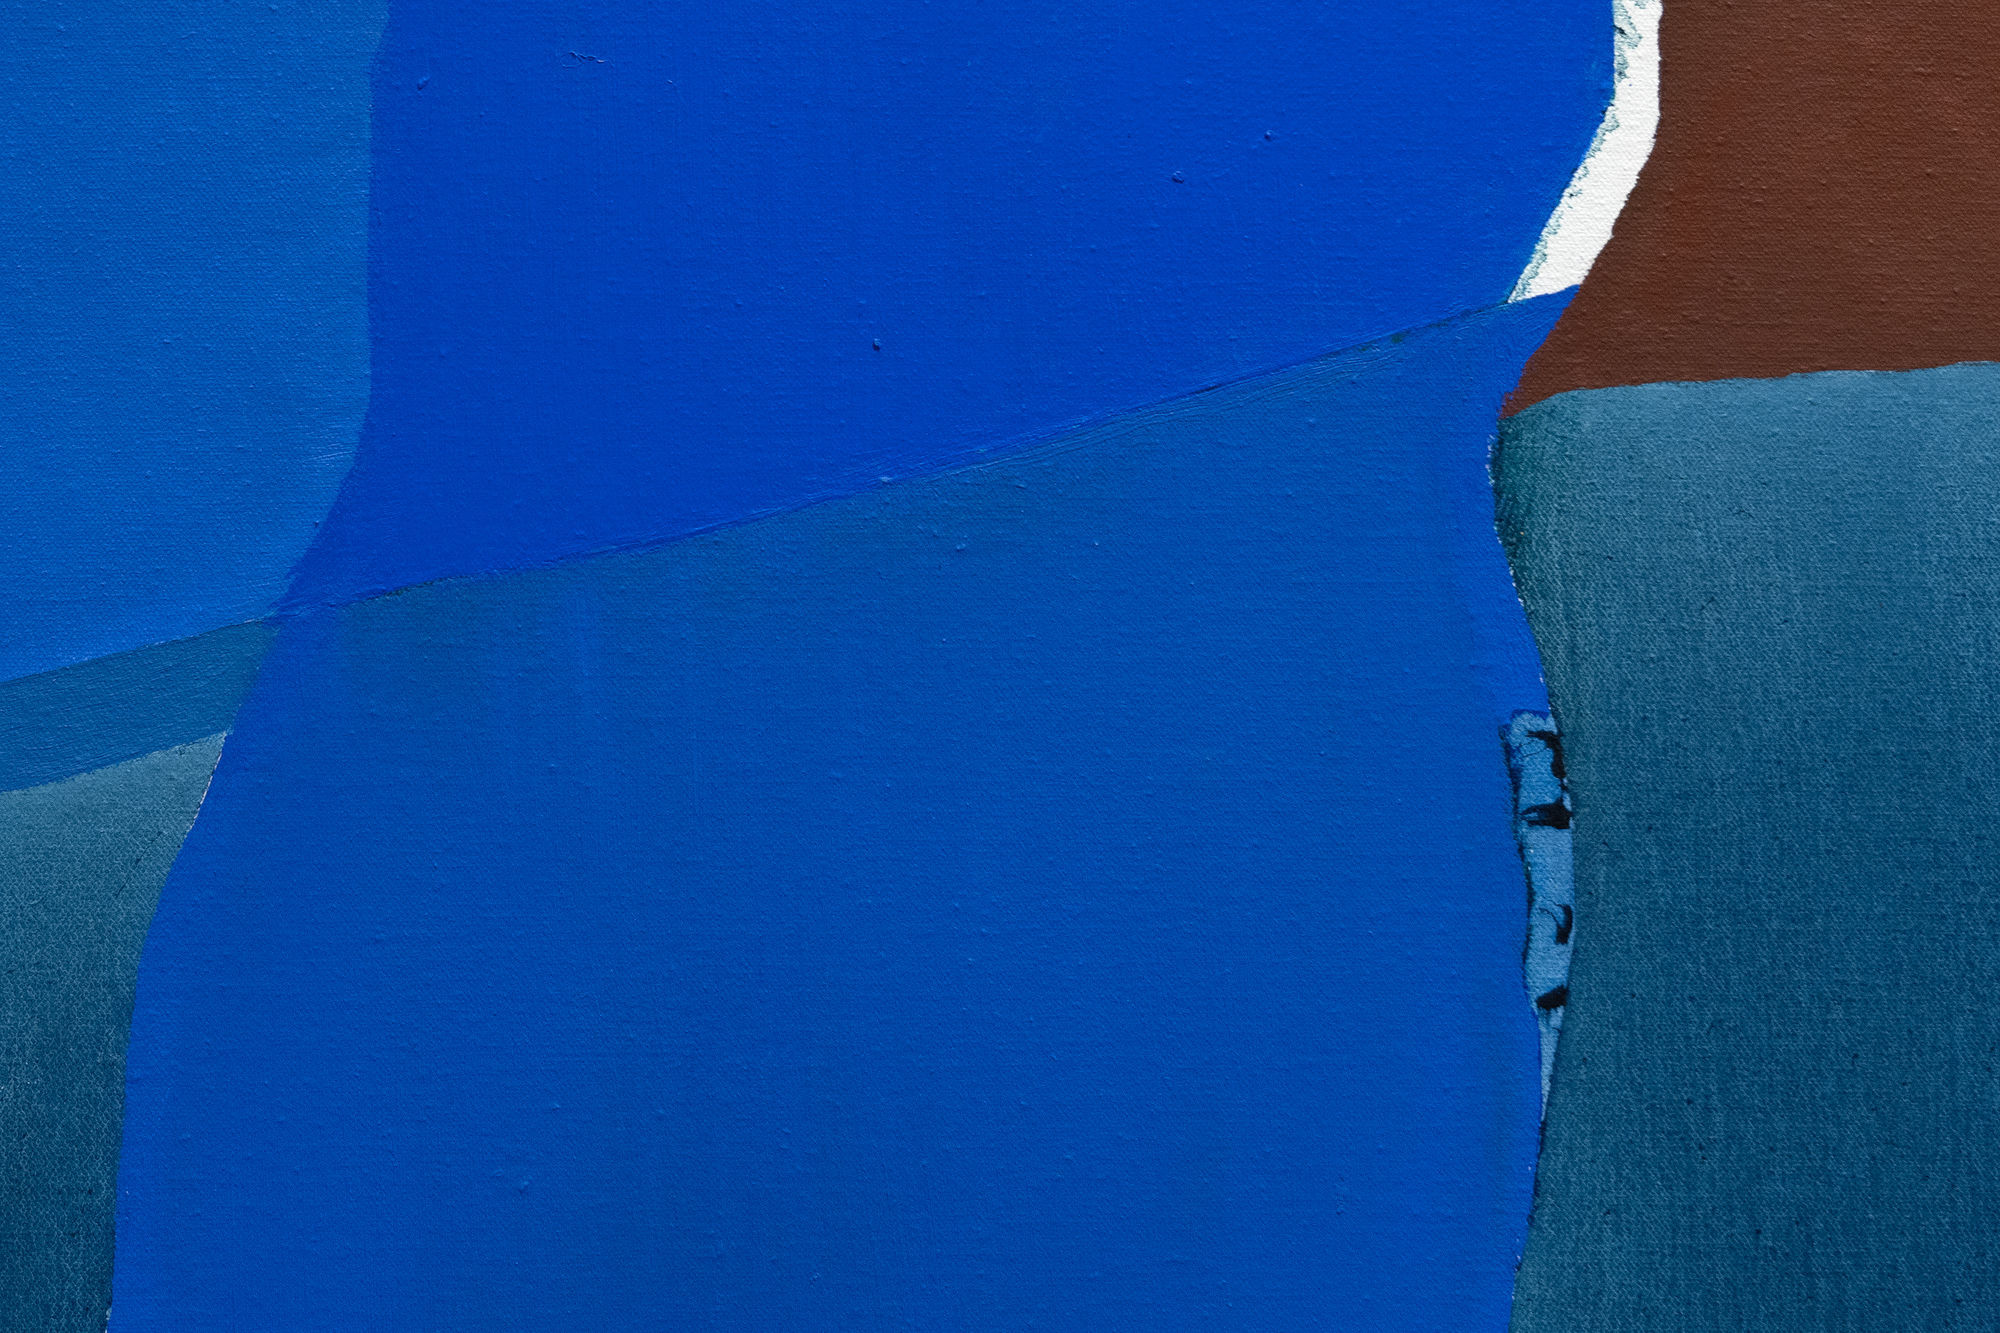 Schon früh etablierte sich Hood als Künstlerin metaphysisch aufgeladener Bilder, die sich nach ihrer Rückkehr nach Houston im Jahr 1962 mit verschiedenen Kosmologien auseinandersetzte. Blue Waters ist eines dieser Werke, die ihre beharrliche Suche nach spiritueller Nahrung widerspiegeln. Ein Band aus gesättigtem, undurchsichtigem Blau ragt in eine Kugel aus klarem Azurblau hinein, die an einen irdischen, wässrigen Globus erinnert. Dieser kühne und doch harmonische Eingriff gleicht einem ätherischen Arm, der einen flüssigen Zustand in ein hypnotisierendes, phosphoreszierendes Phthalogrün verwandelt, dessen Opulenz und strömende Brillanz göttliches Eingreifen suggeriert und die Metapher der &quot;Hand Gottes&quot; heraufbeschwört, die das Wesen des Lebens belebt. Hoods meisterhafte Verwendung von Farbe und Form lädt oft zu Interpretationen einer kosmischen oder spirituellen Umarmung innerhalb der natürlichen Welt ein. Doch ihre klaren Farbverläufe zeugen nicht von Zufälligkeit oder Ungewissheit, sondern von einer bemerkenswerten Beherrschung und Kontrolle, die Blue Waters ein weiteres Element der Ehrfurcht verleiht.